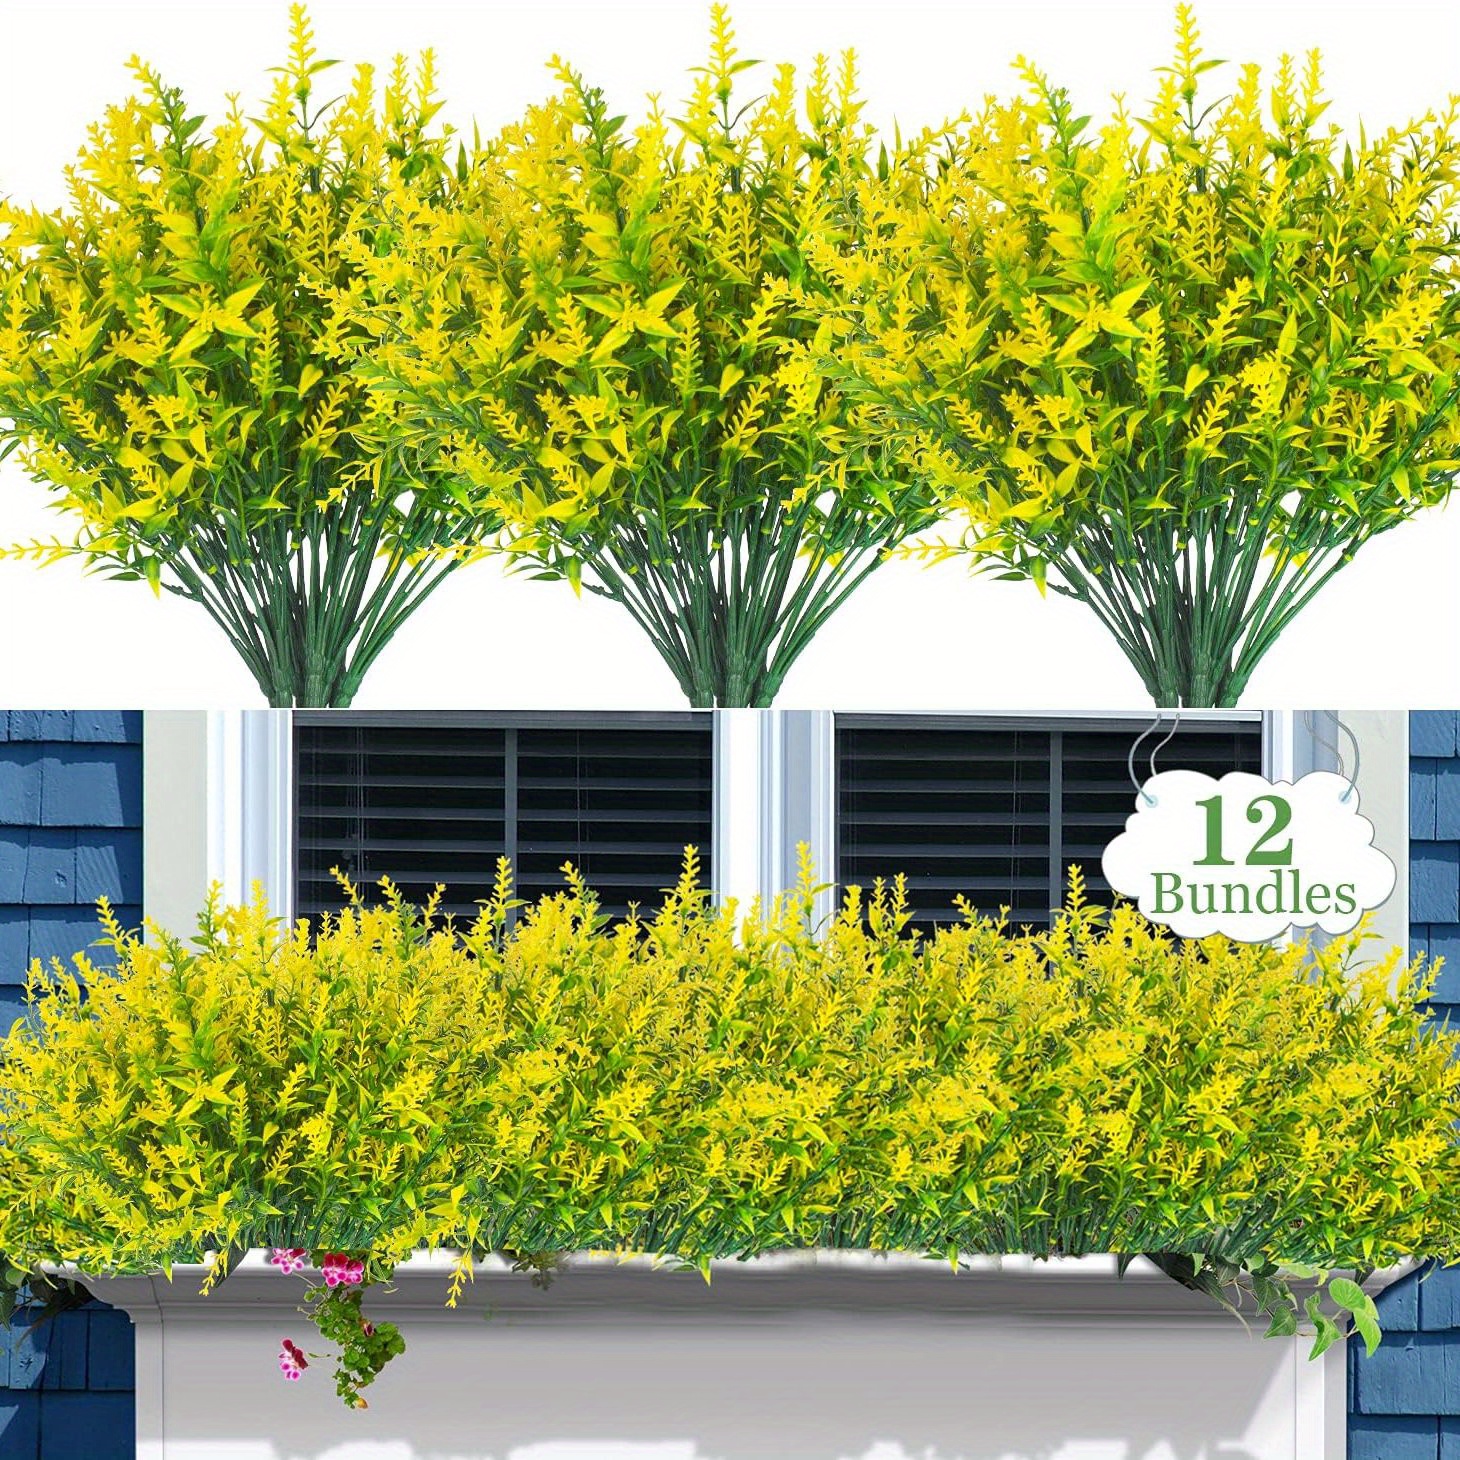  LTJXL Plantas colgantes artificiales de 39.4 in, plantas  colgantes falsas de hiedra falsa, vid resistente a los rayos UV, plantas de  plástico para el hogar, boda, fiesta, jardín, pared de hotel